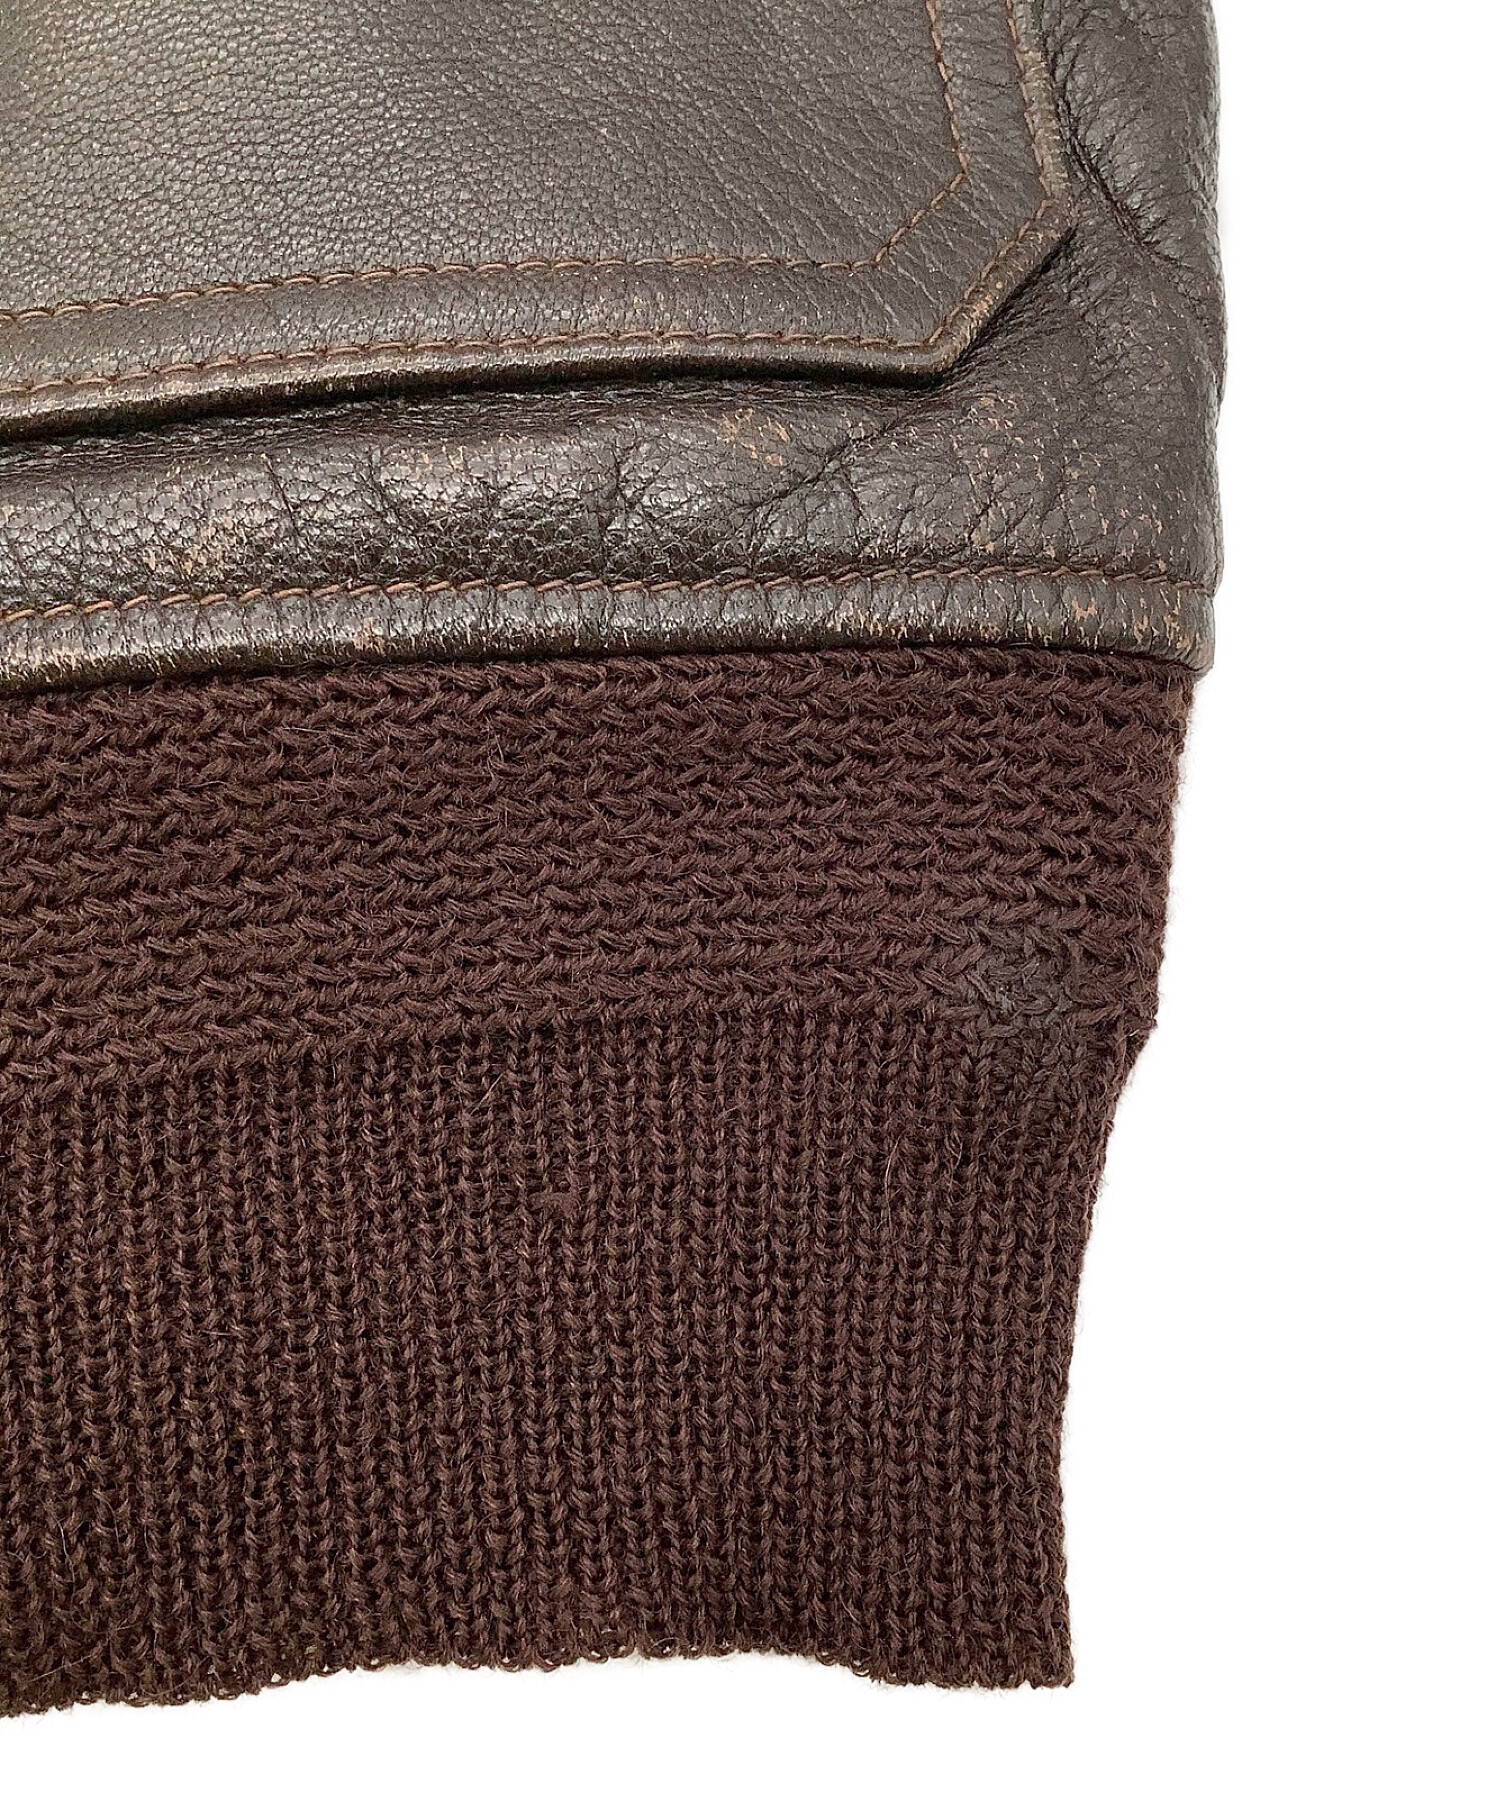 Eastman Leather Clothing (イーストマン レザー クロージング) G-1フライトジャケット ブラウン サイズ:36